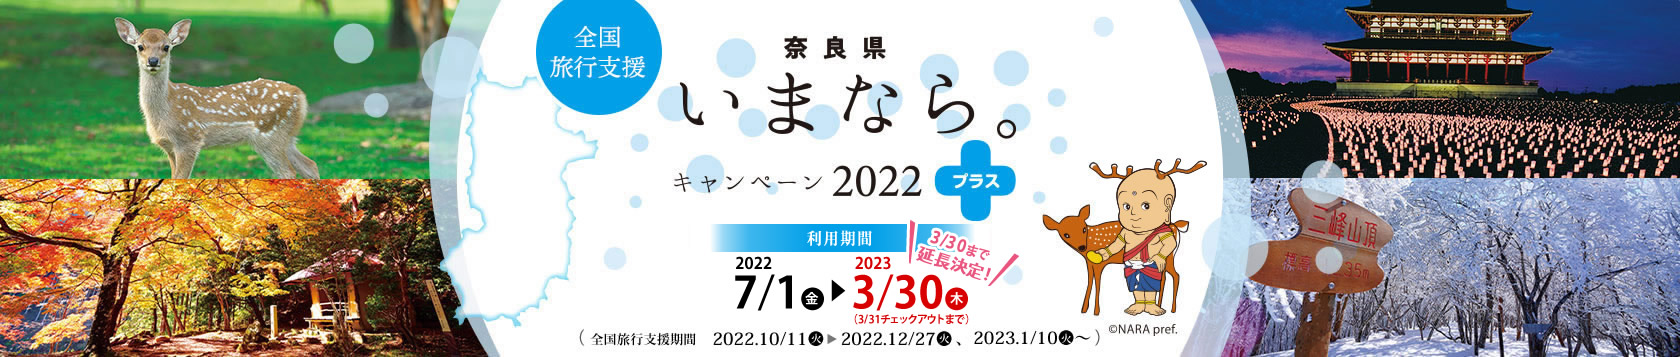 【奈良県】奈良県「いまなら。キャンペーン2022プラス」